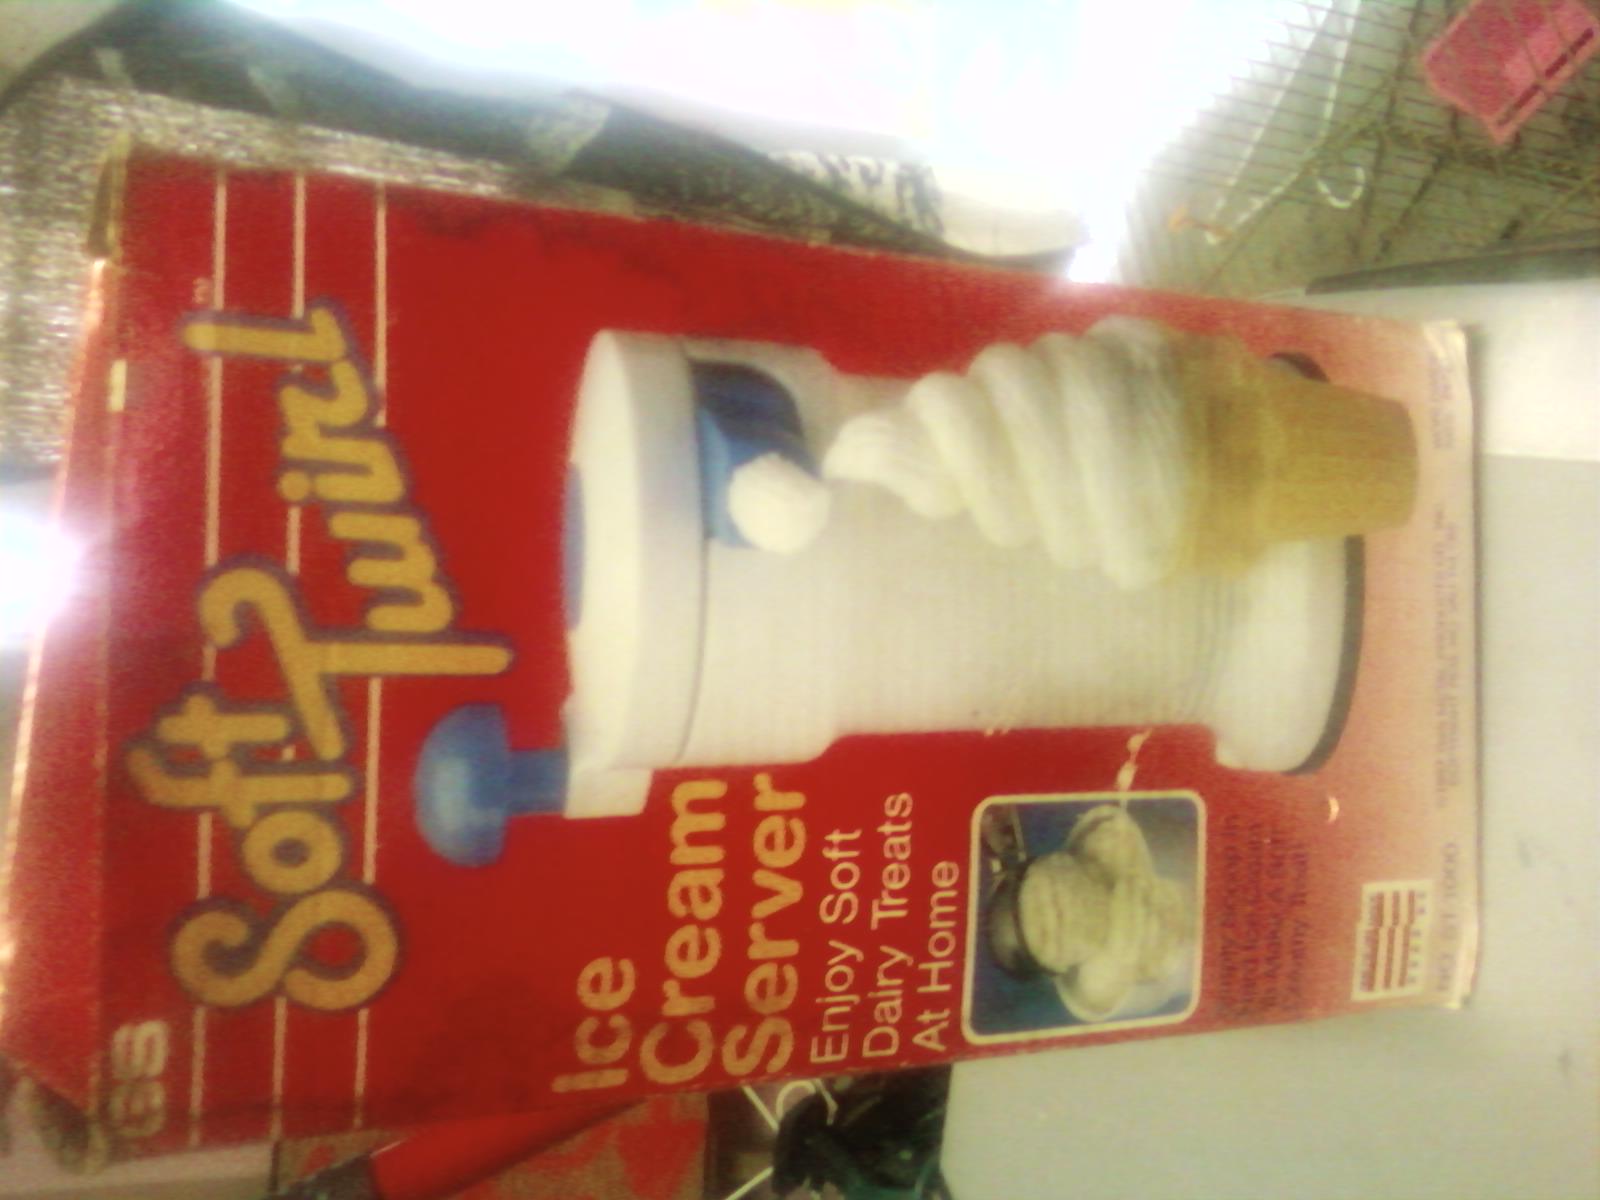 Soft twirl ice cream for cones maker